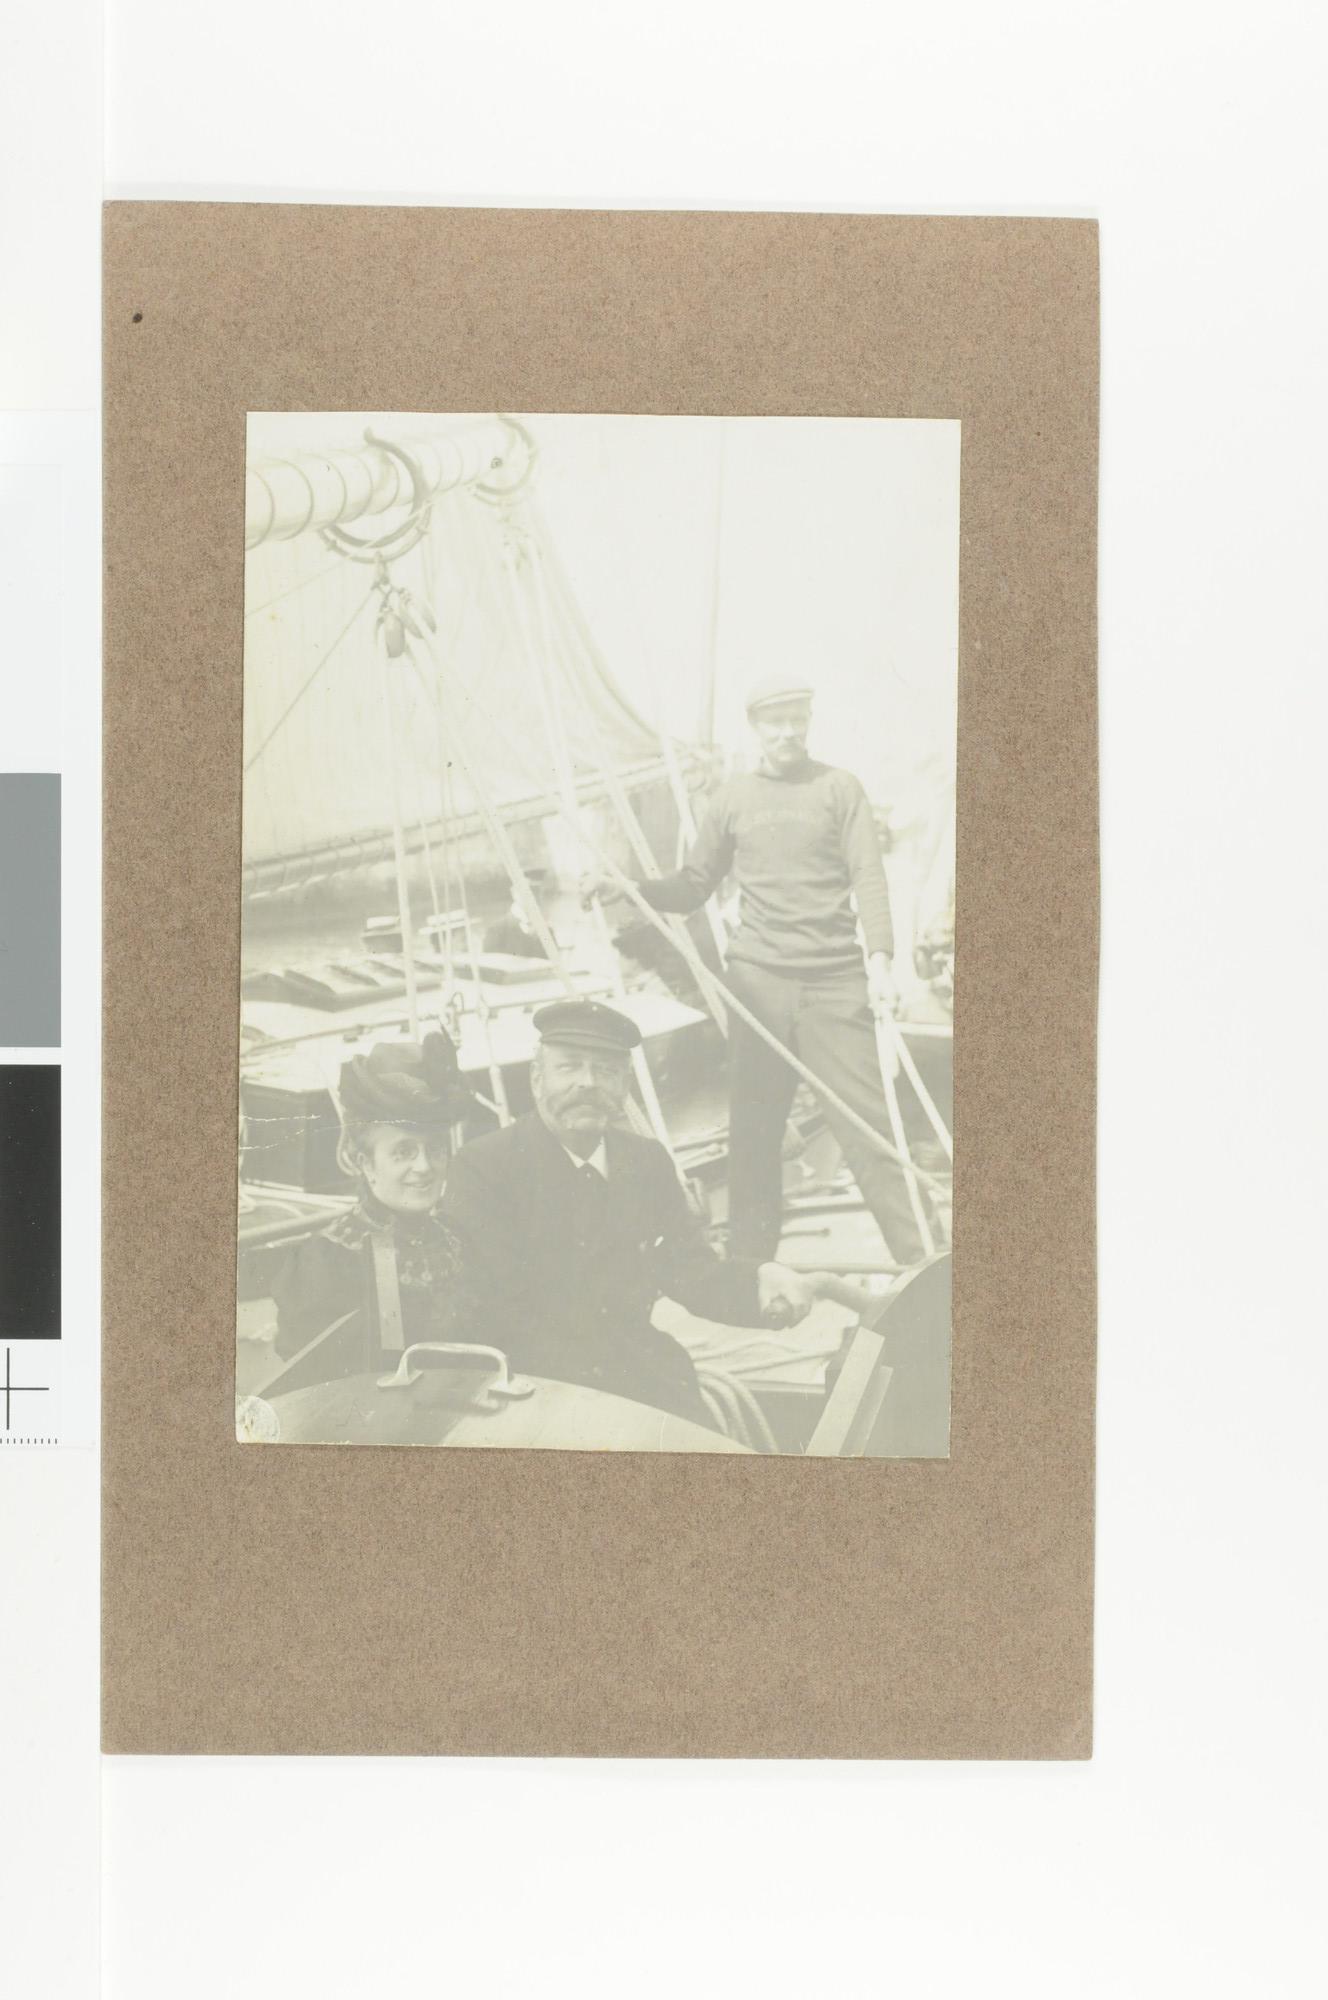 S.5707(08)25; E.H. Crone en mevrouw H.R.E. Crone-Muller aan boord van het jacht 'Jozef Israëls' liggende in de Oranjesluis; foto